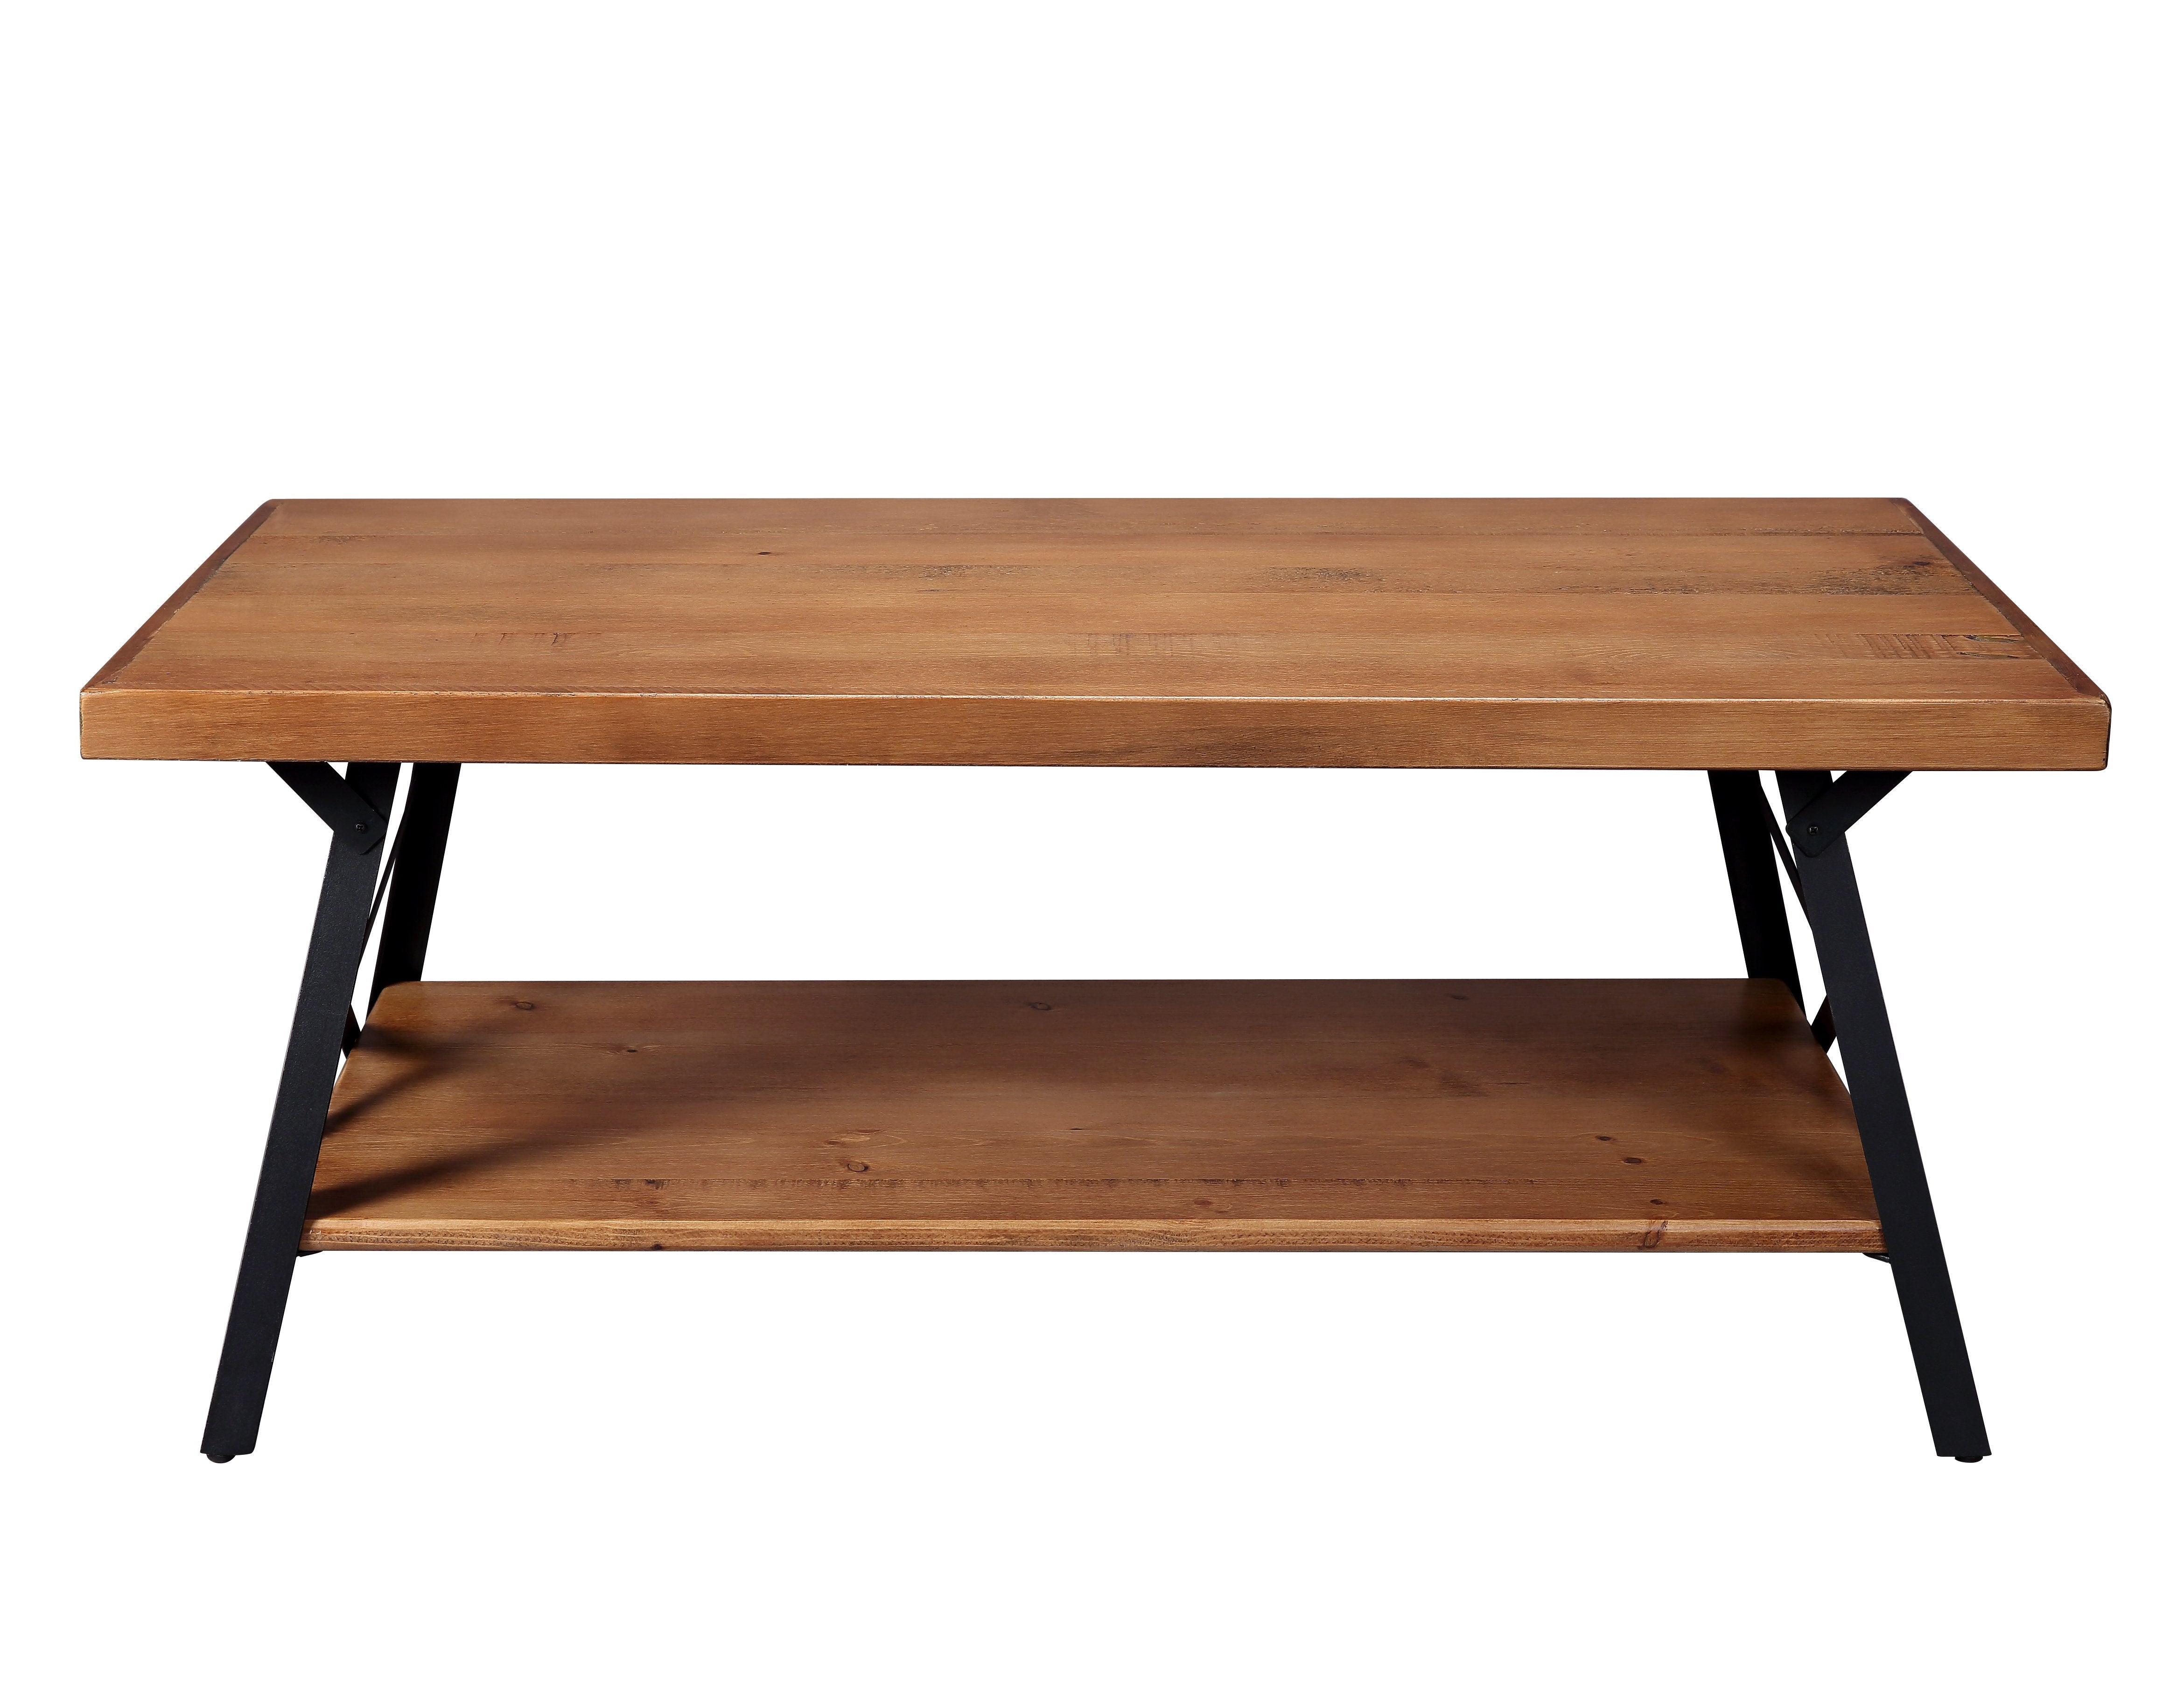 43" Metal Legs Rustic Coffee Table, Solid Wood Tabletop-Boyel Living